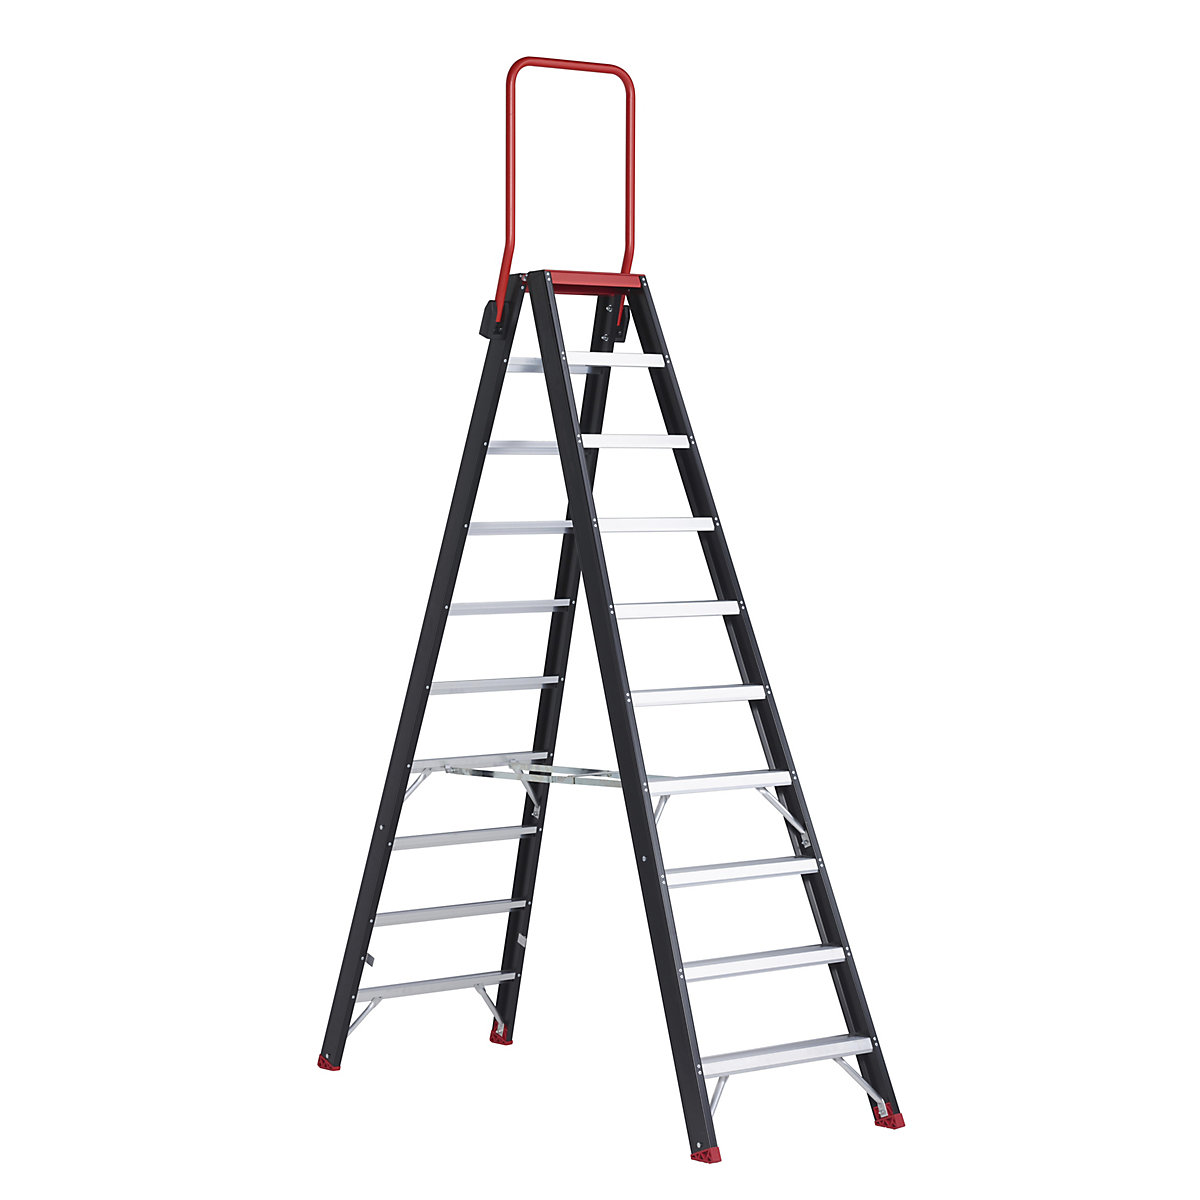 Escada dupla de segurança – Altrex, subida dos dois lados, 2 x 10 degraus-1